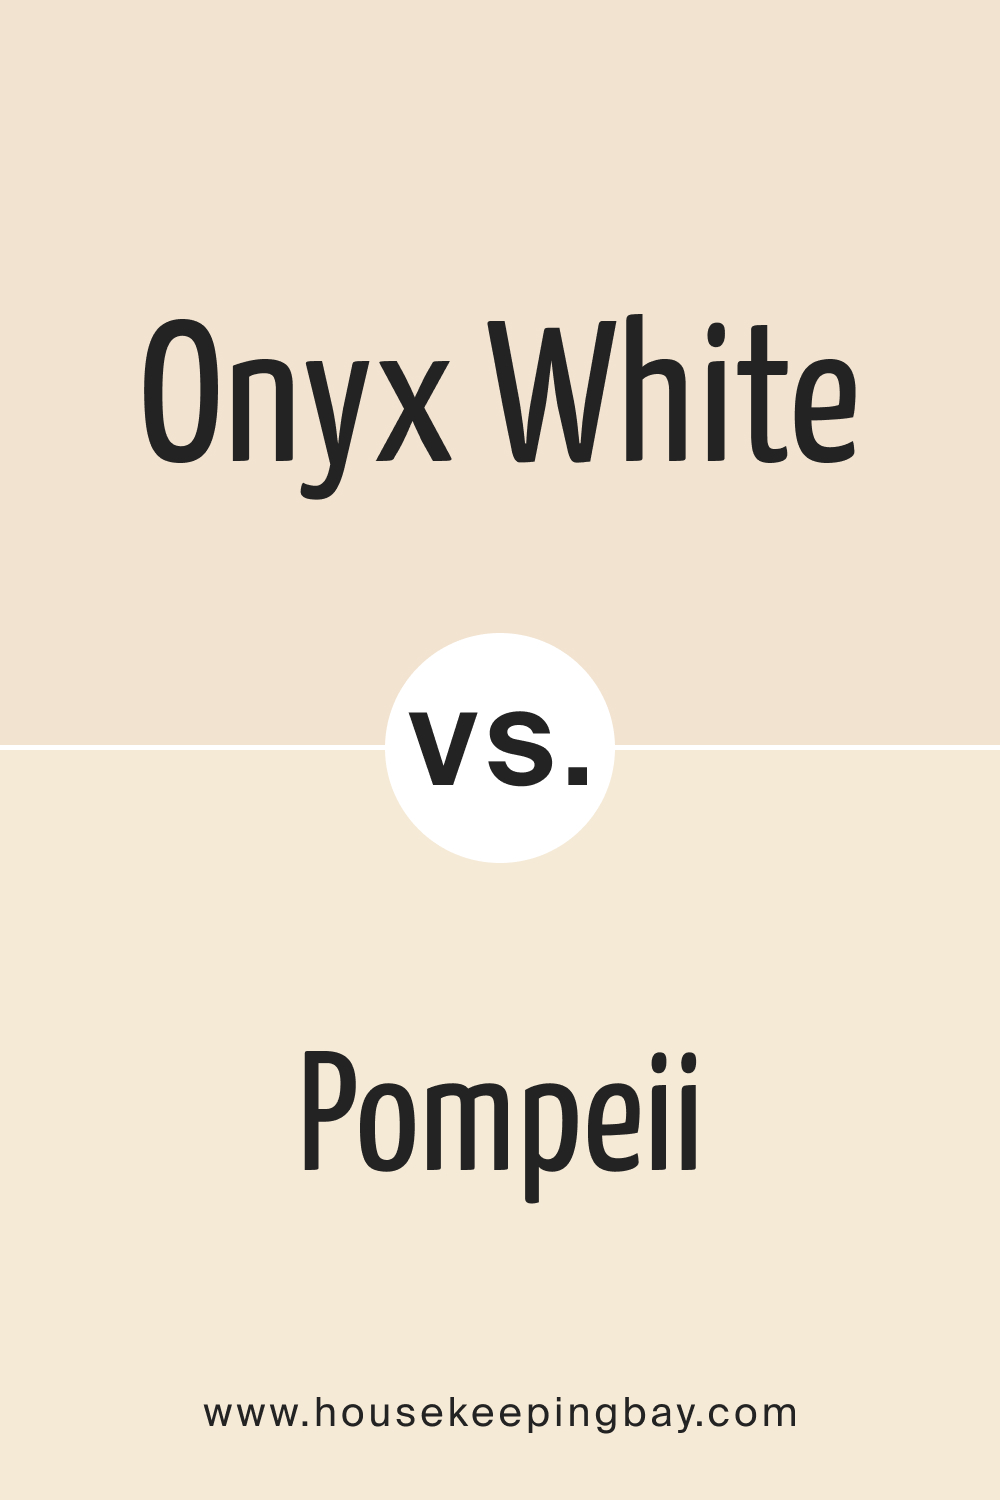 Onyx White OC 74 vs. BM OC 82 Pompeii